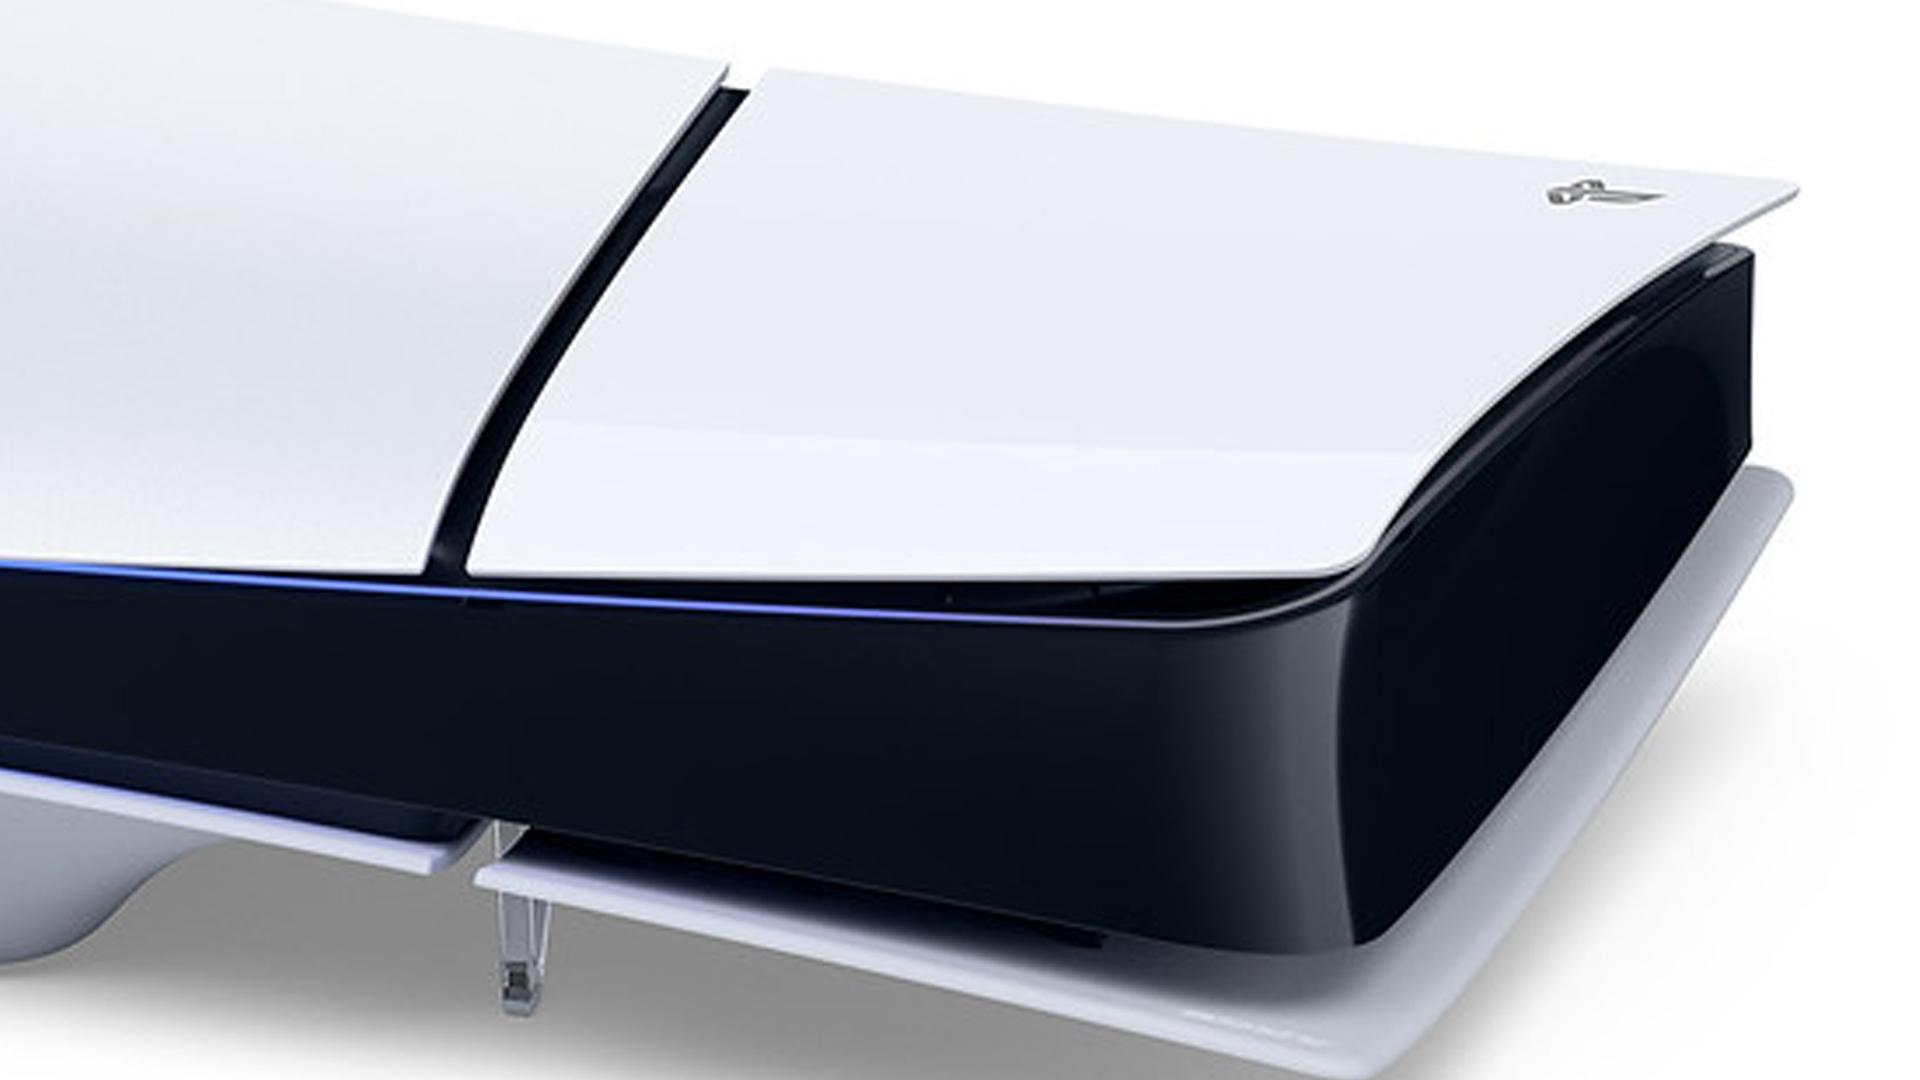 PlayStation 5 Slim : voilà une caractéristique plutôt pratique pour le lecteur Blu-Ray détachable, mais...